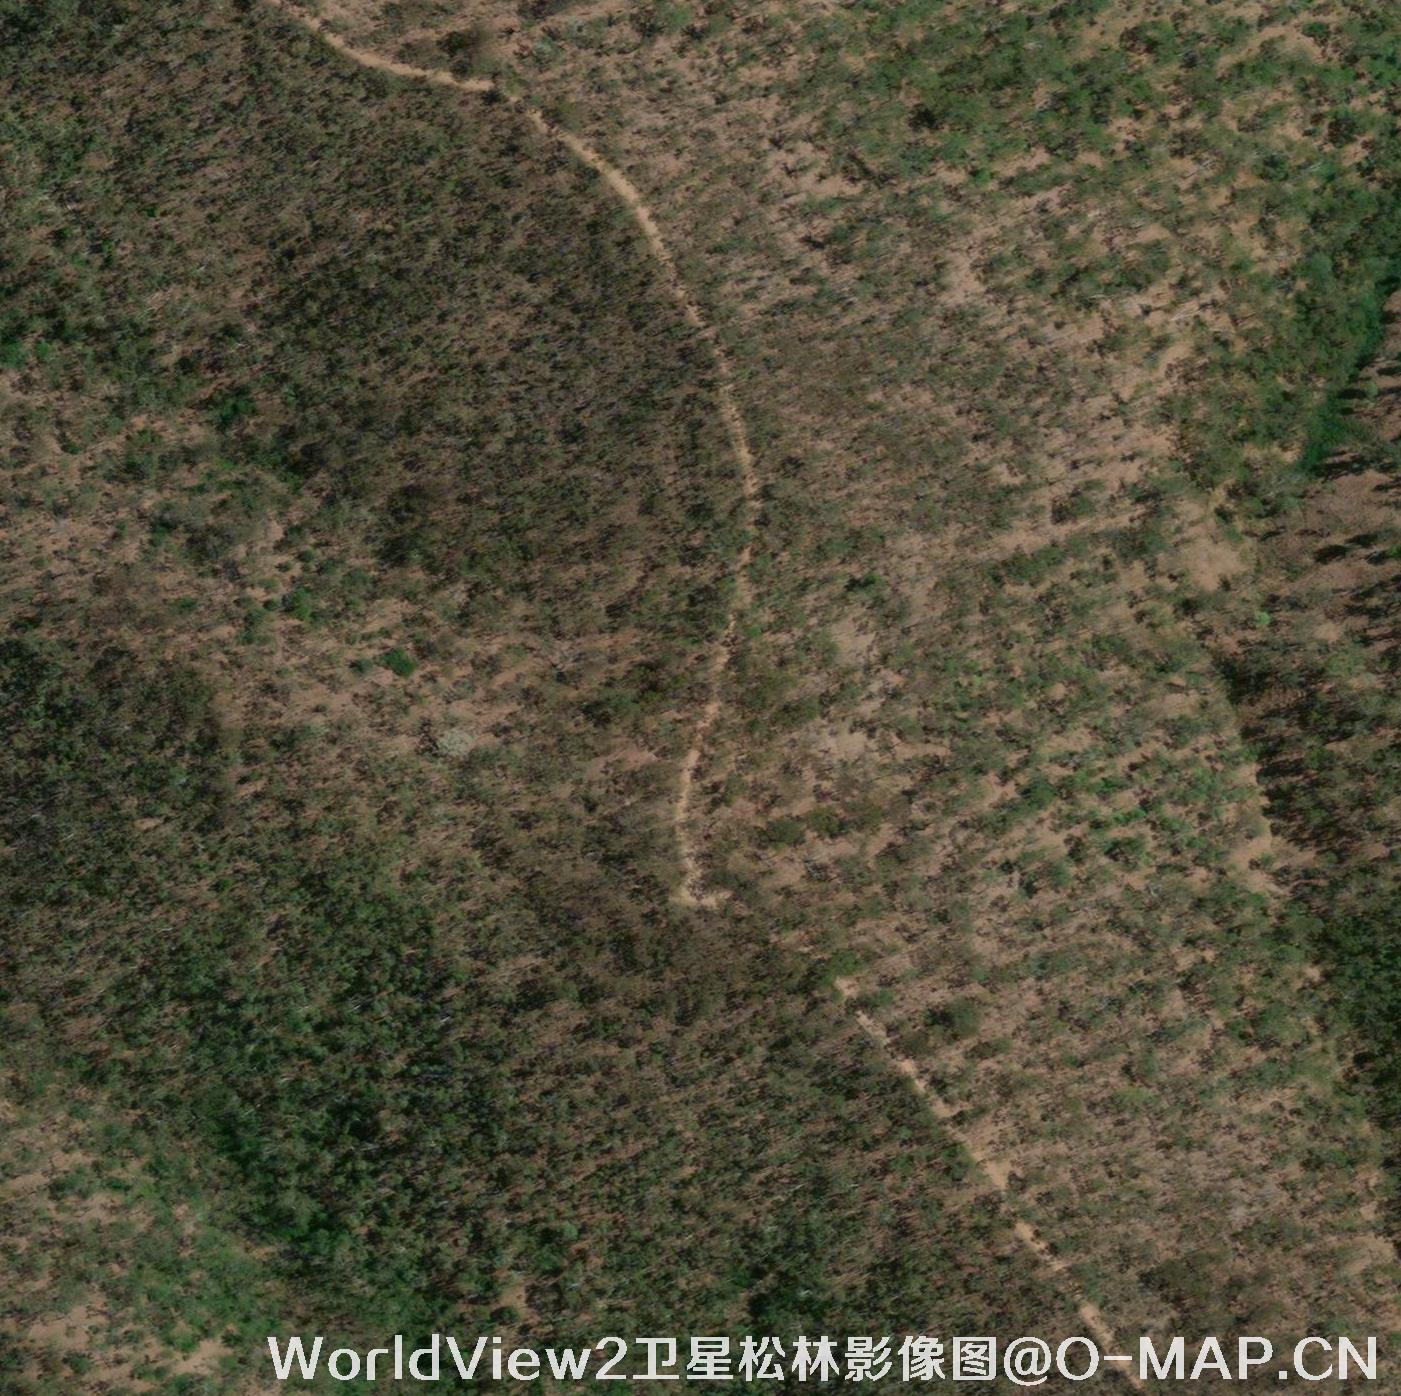 WorldView2卫星拍摄的0.5米分辨率卫星图片